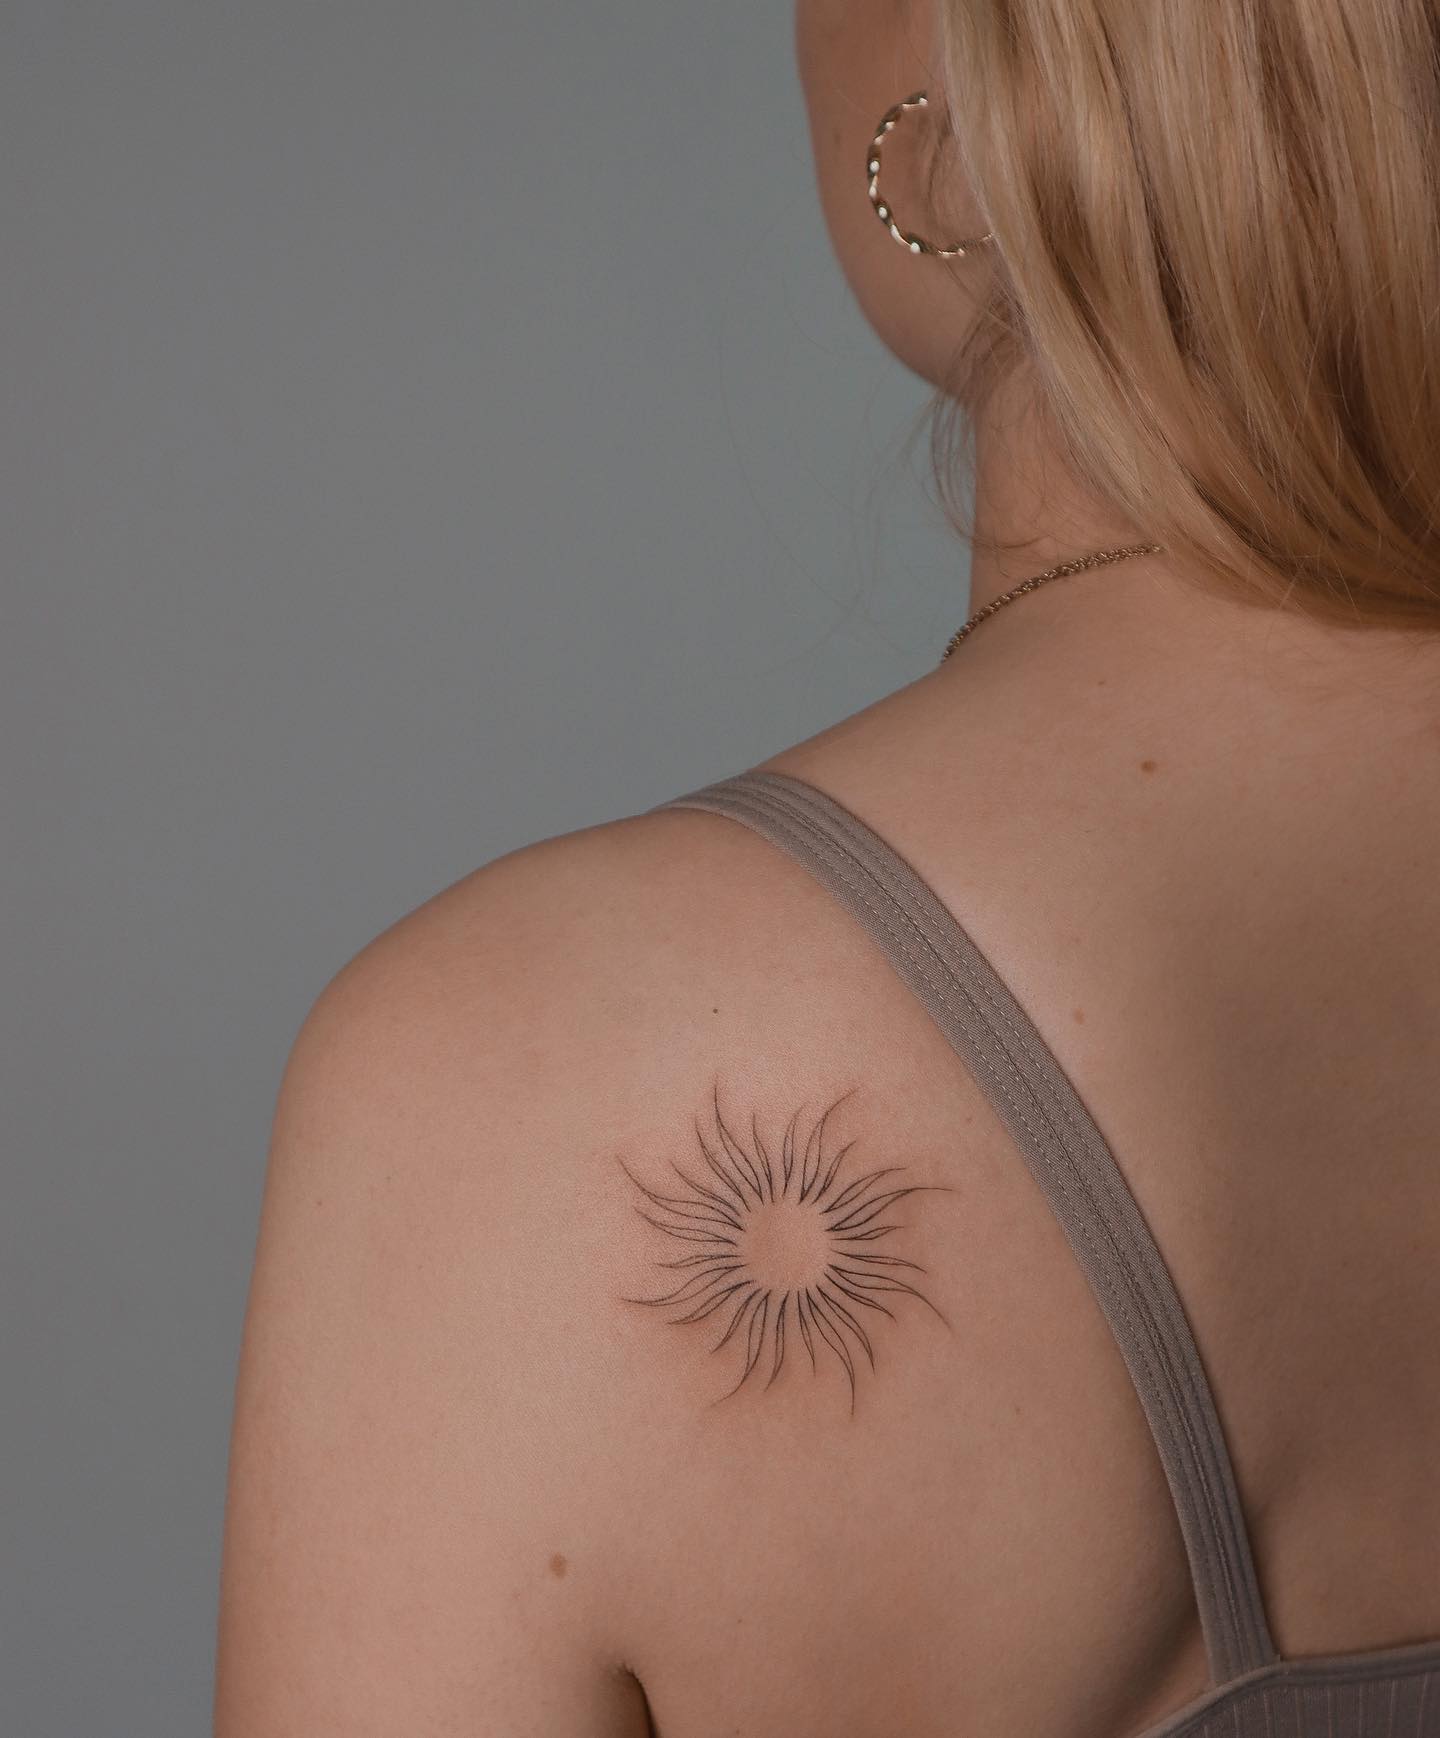 Tatuaje pequeño de sol en el hombro.